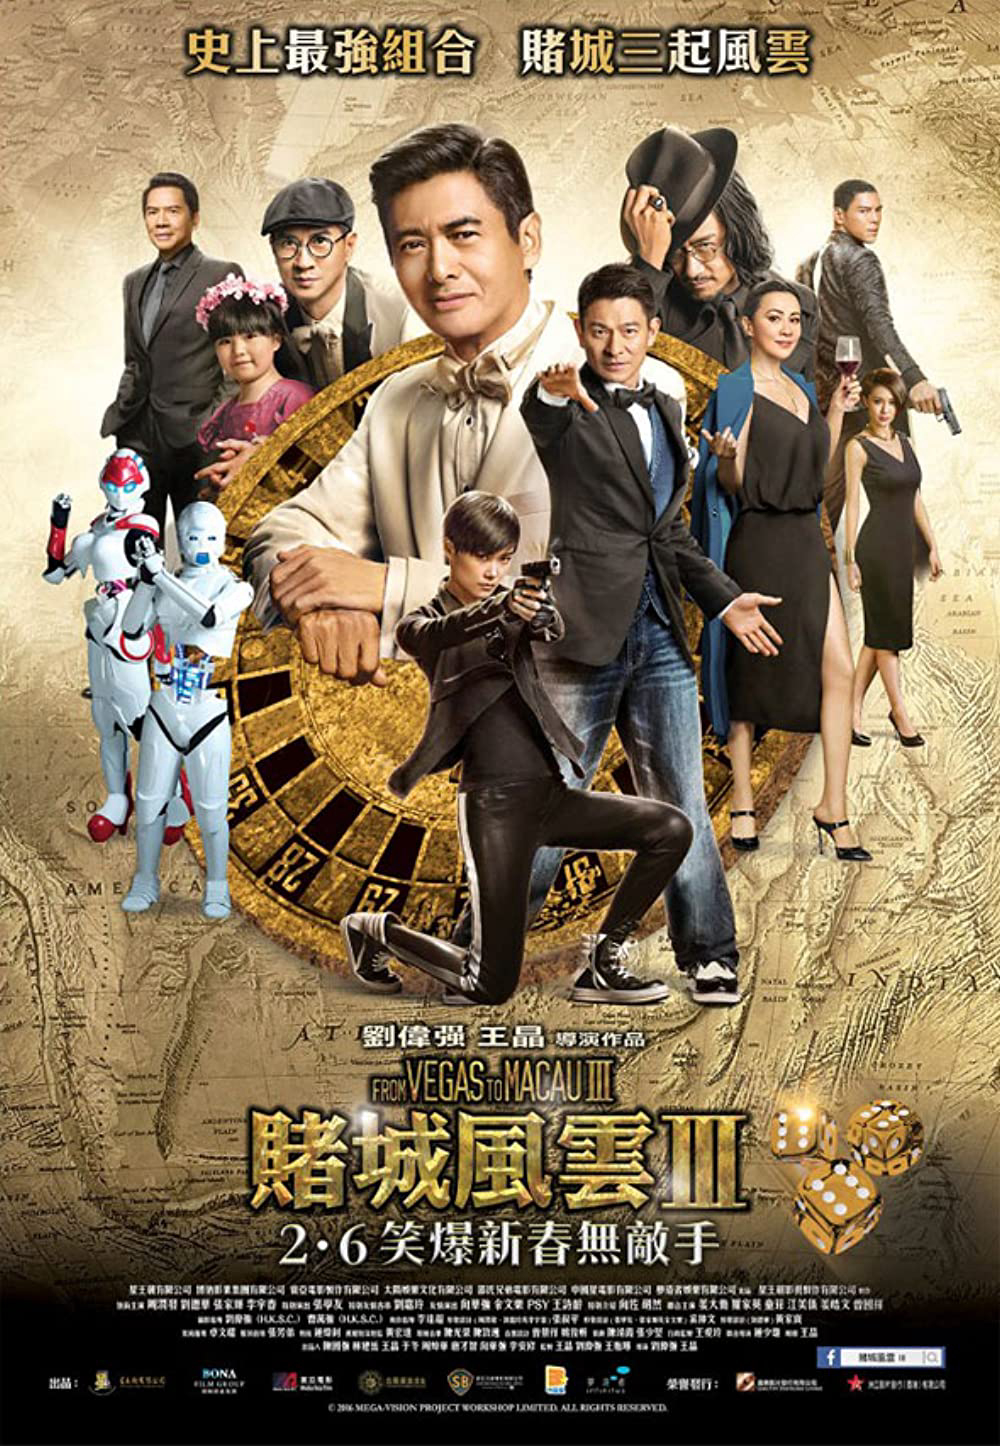 Banner Phim Đỗ Thành Phong Vân 3 (From Vegas To Macau III)